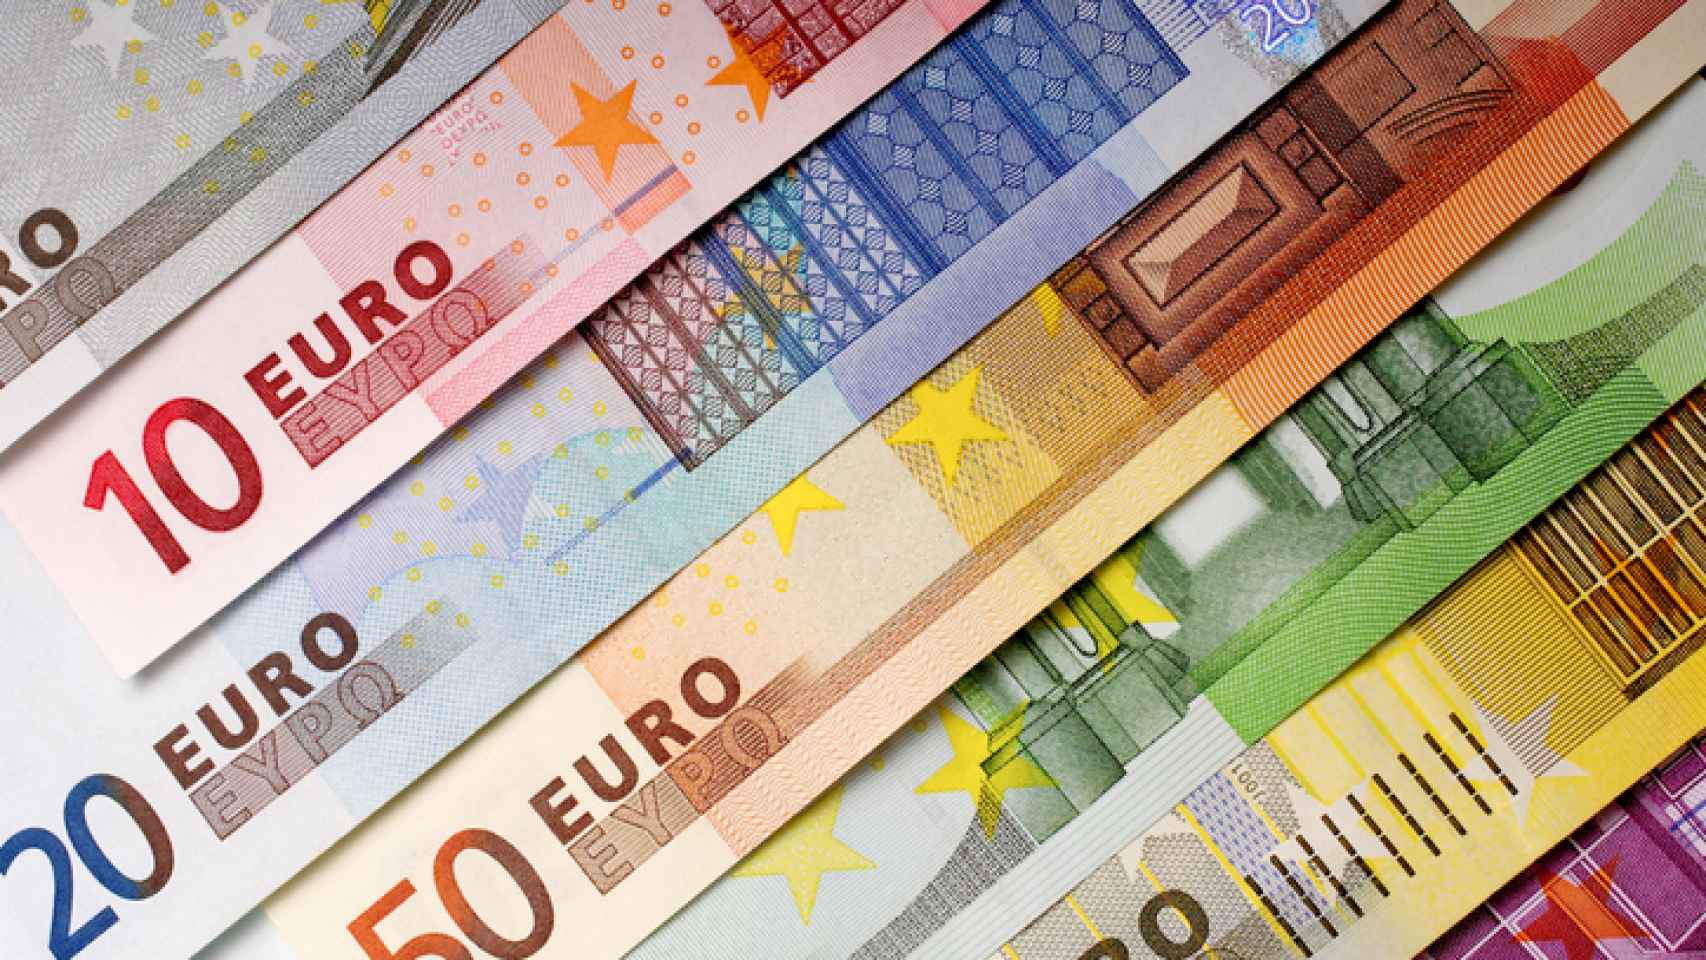 Billetes de euro de distintas denominaciones.